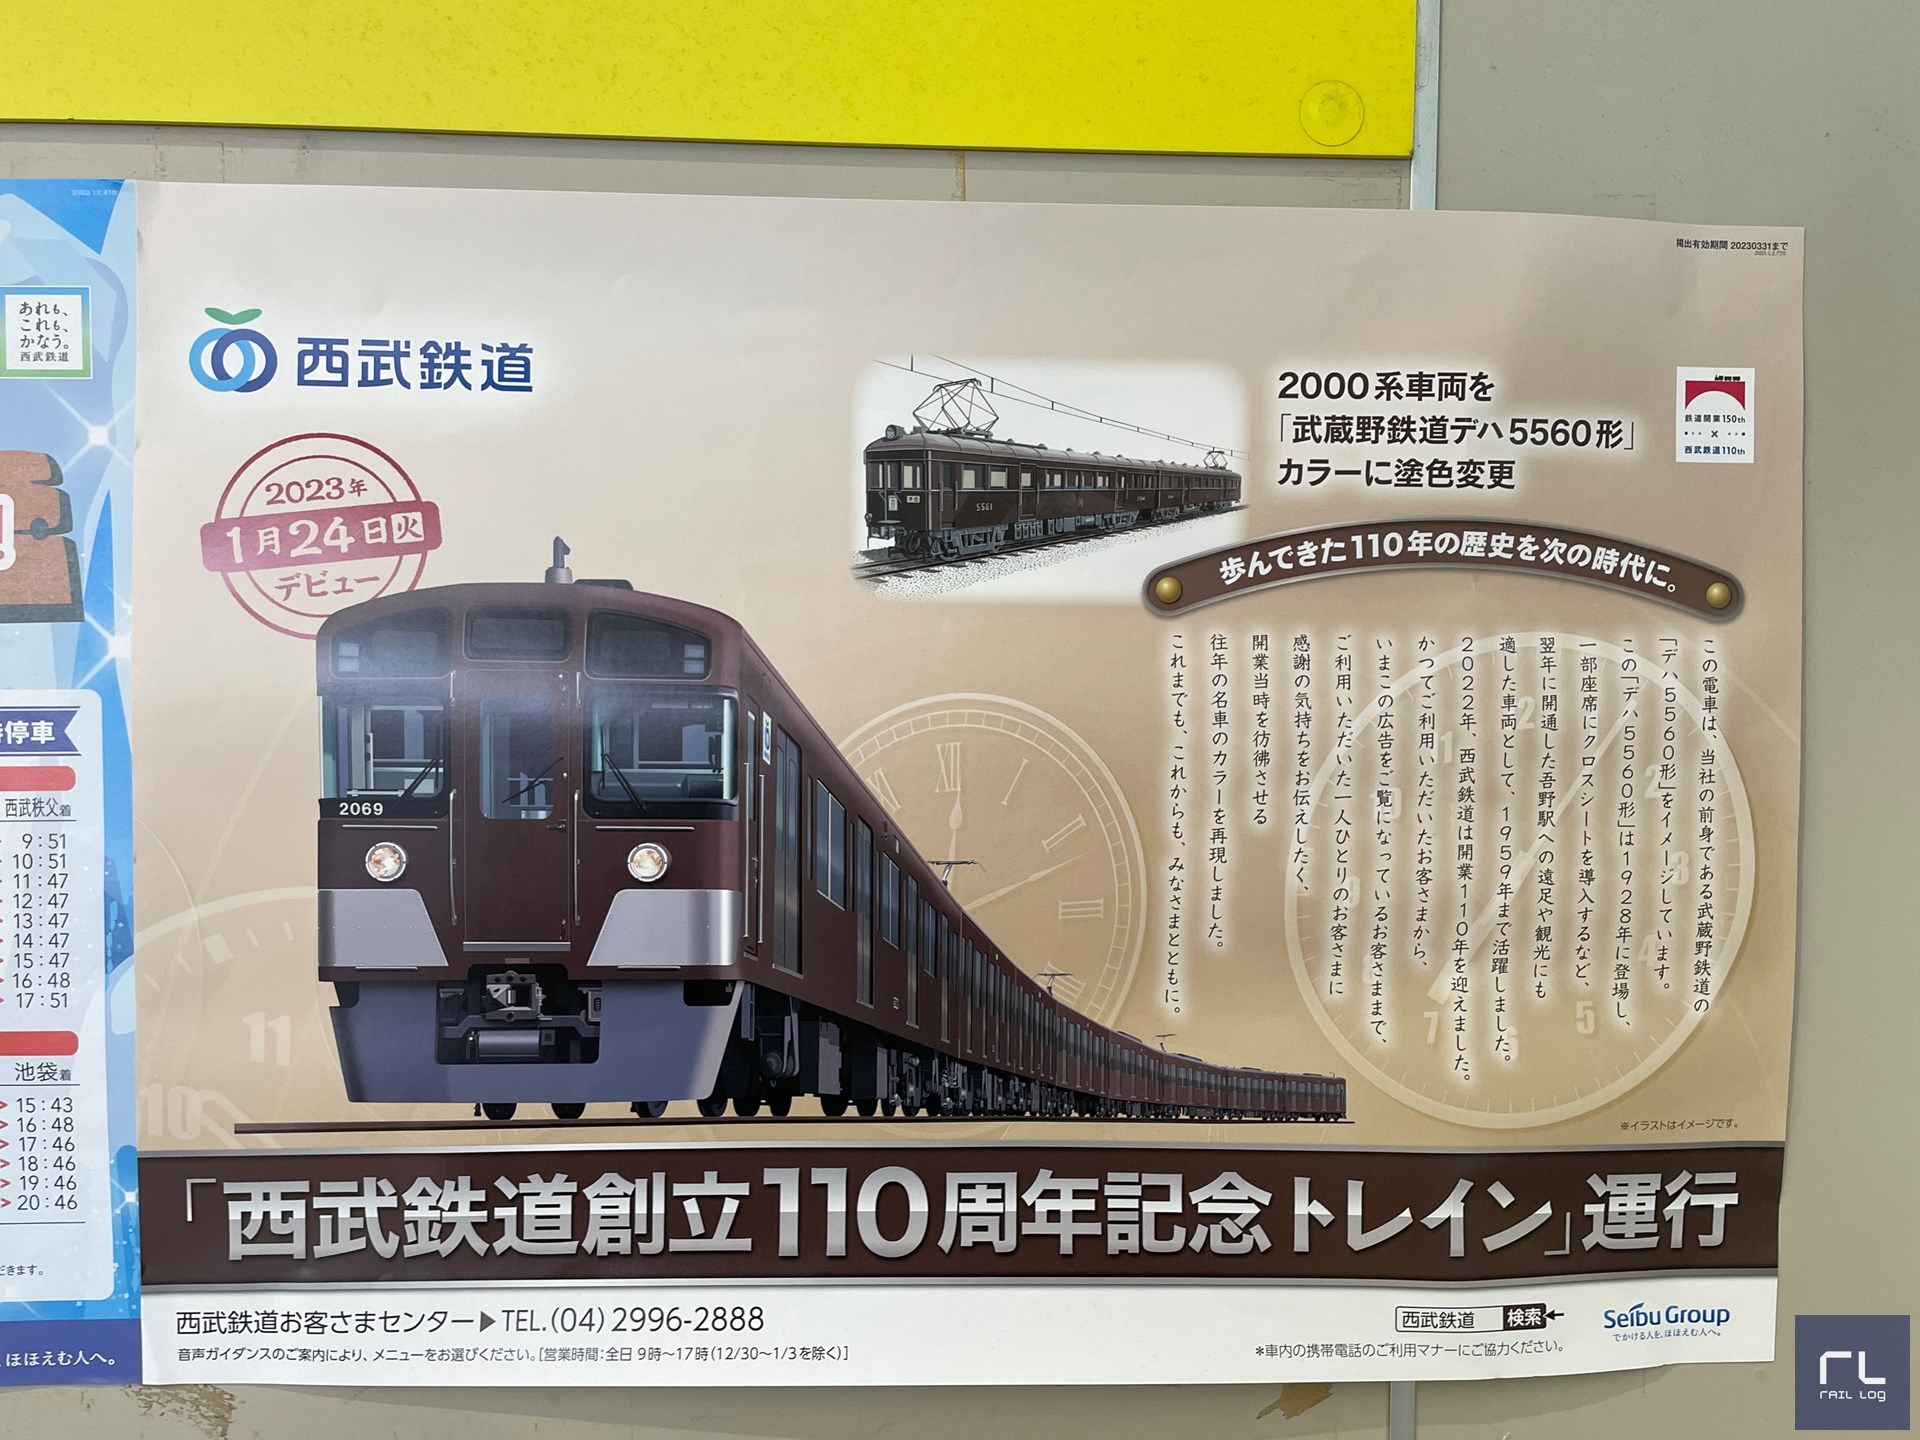 歩んできた110年の歴史を次の時代に。  この電車は、当社の前身である武蔵野鉄道の「デハ5560形」をイメージしています。
この「デハ5560形」は1928年に登場し、一部座席にクロスシートを導入するなど、翌年に開通した吾野駅への遠足や観光にも適した車両として、1959年まで活躍しました。
2022年、西武鉄道は開業110年を迎えました。
かつてご利用いただいたお客さまから、いまこの広告をご覧になっているお客さままで、ご利用いただいた一人ひとりのお客さまに感謝の気持ちをお伝えしたく、開業当時を彷彿とさせる往年の名車のカラーを再現しました。
これまでも、これからも、みなさまとともに。